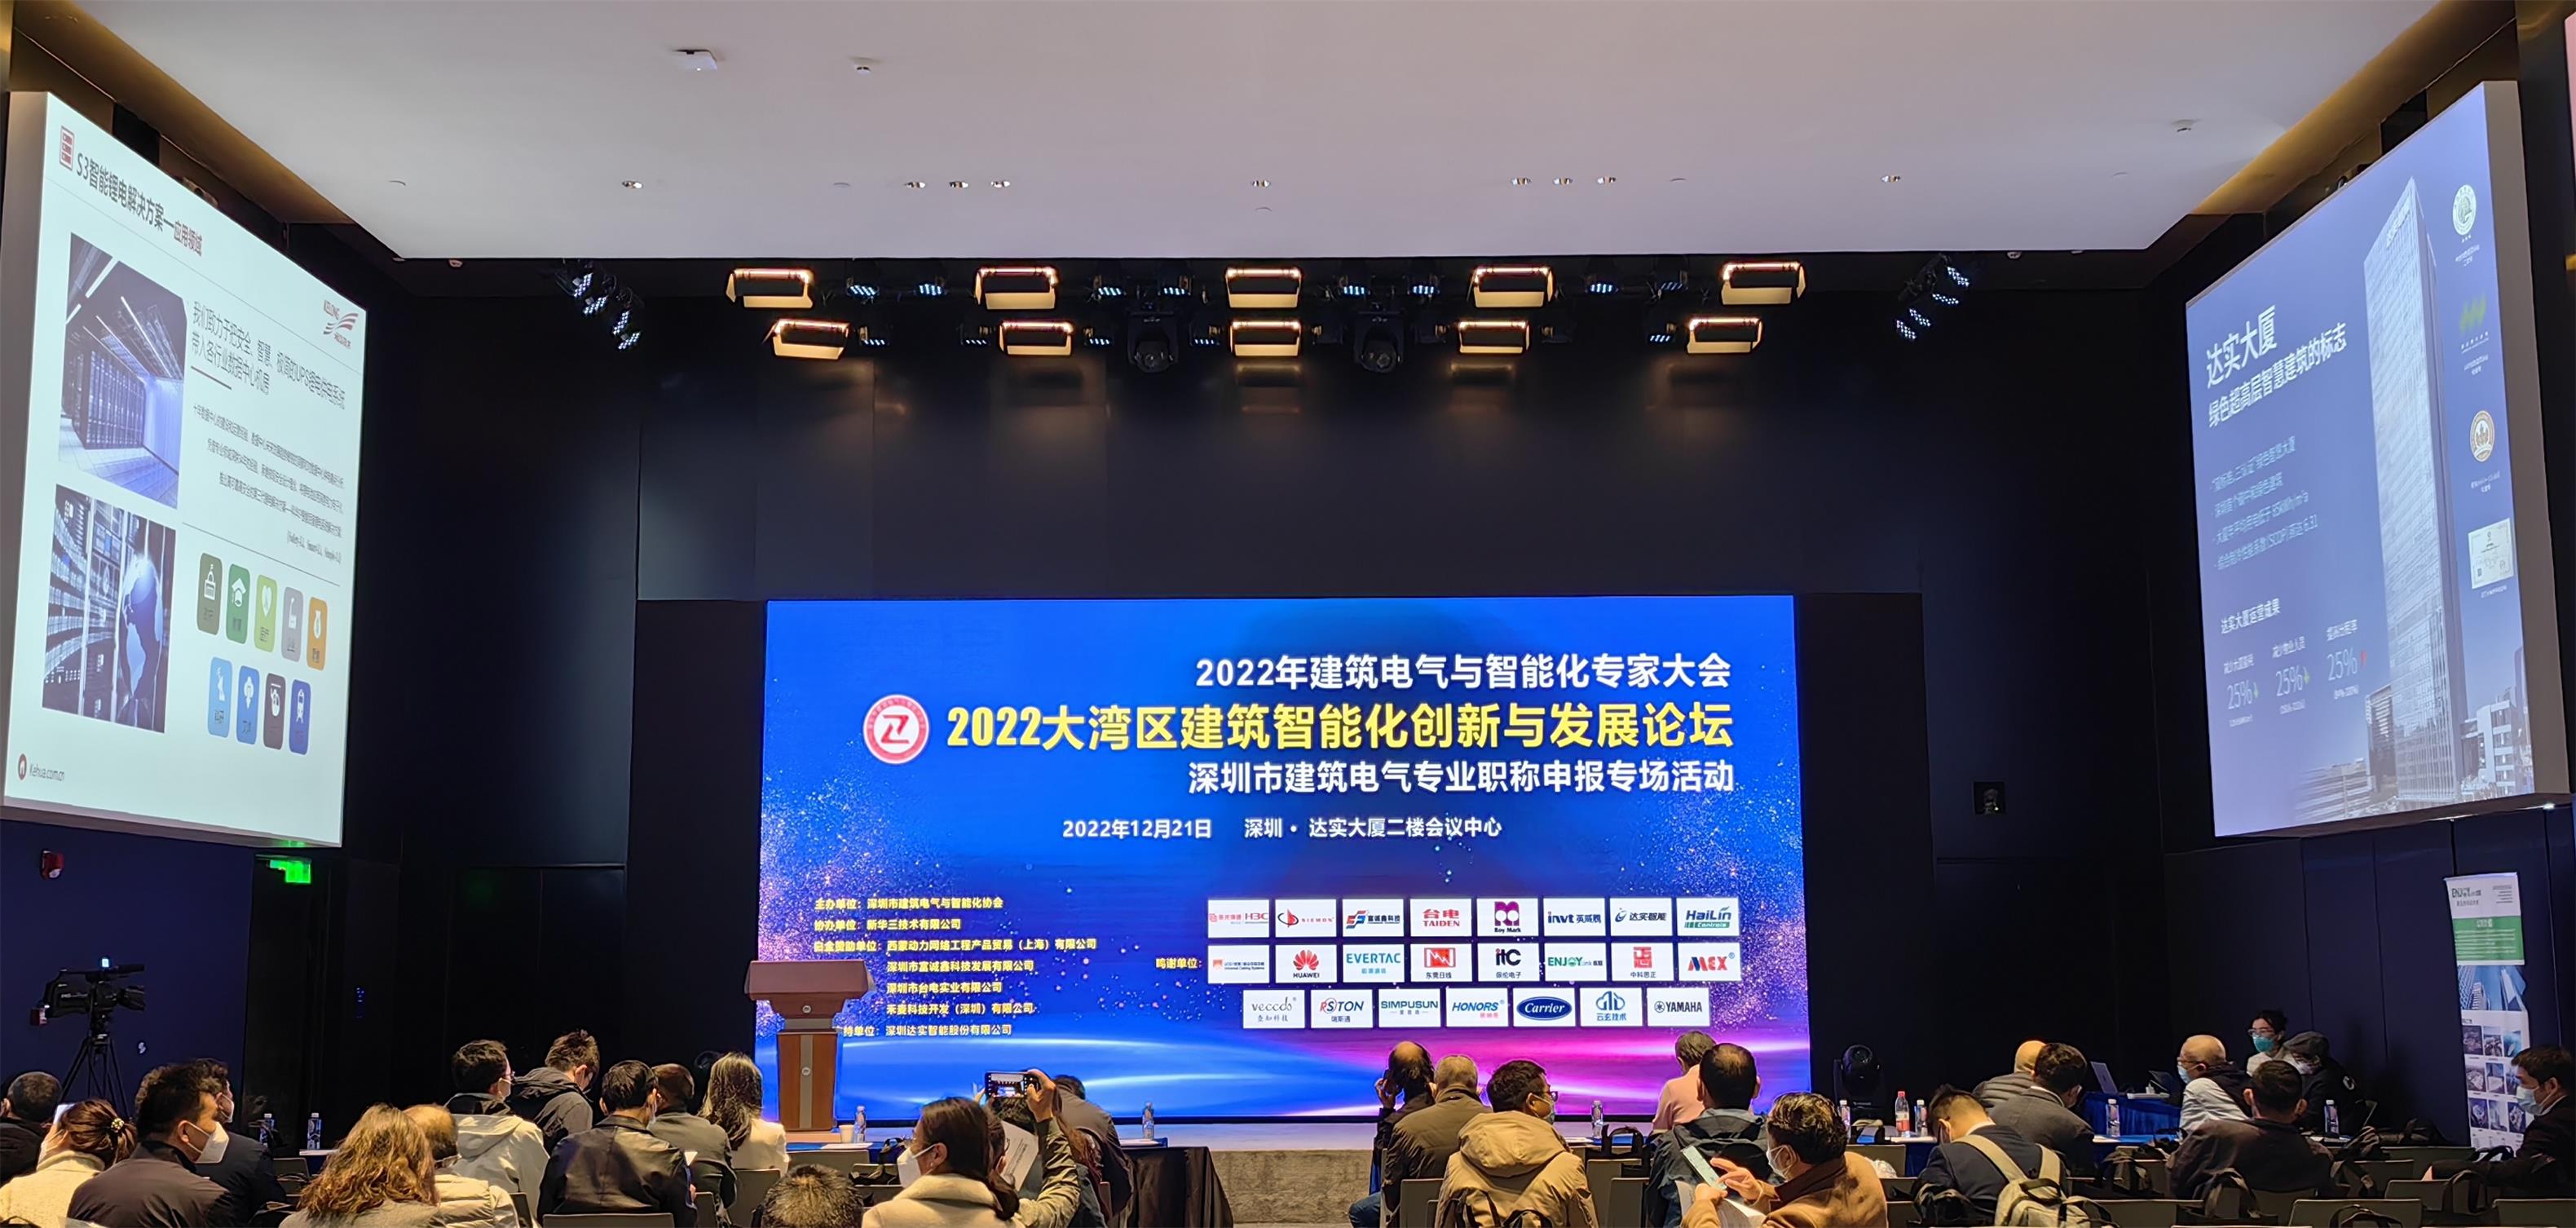 快讯 | 太阳成城集团亮相2022华南建筑智能化创新与发展论坛